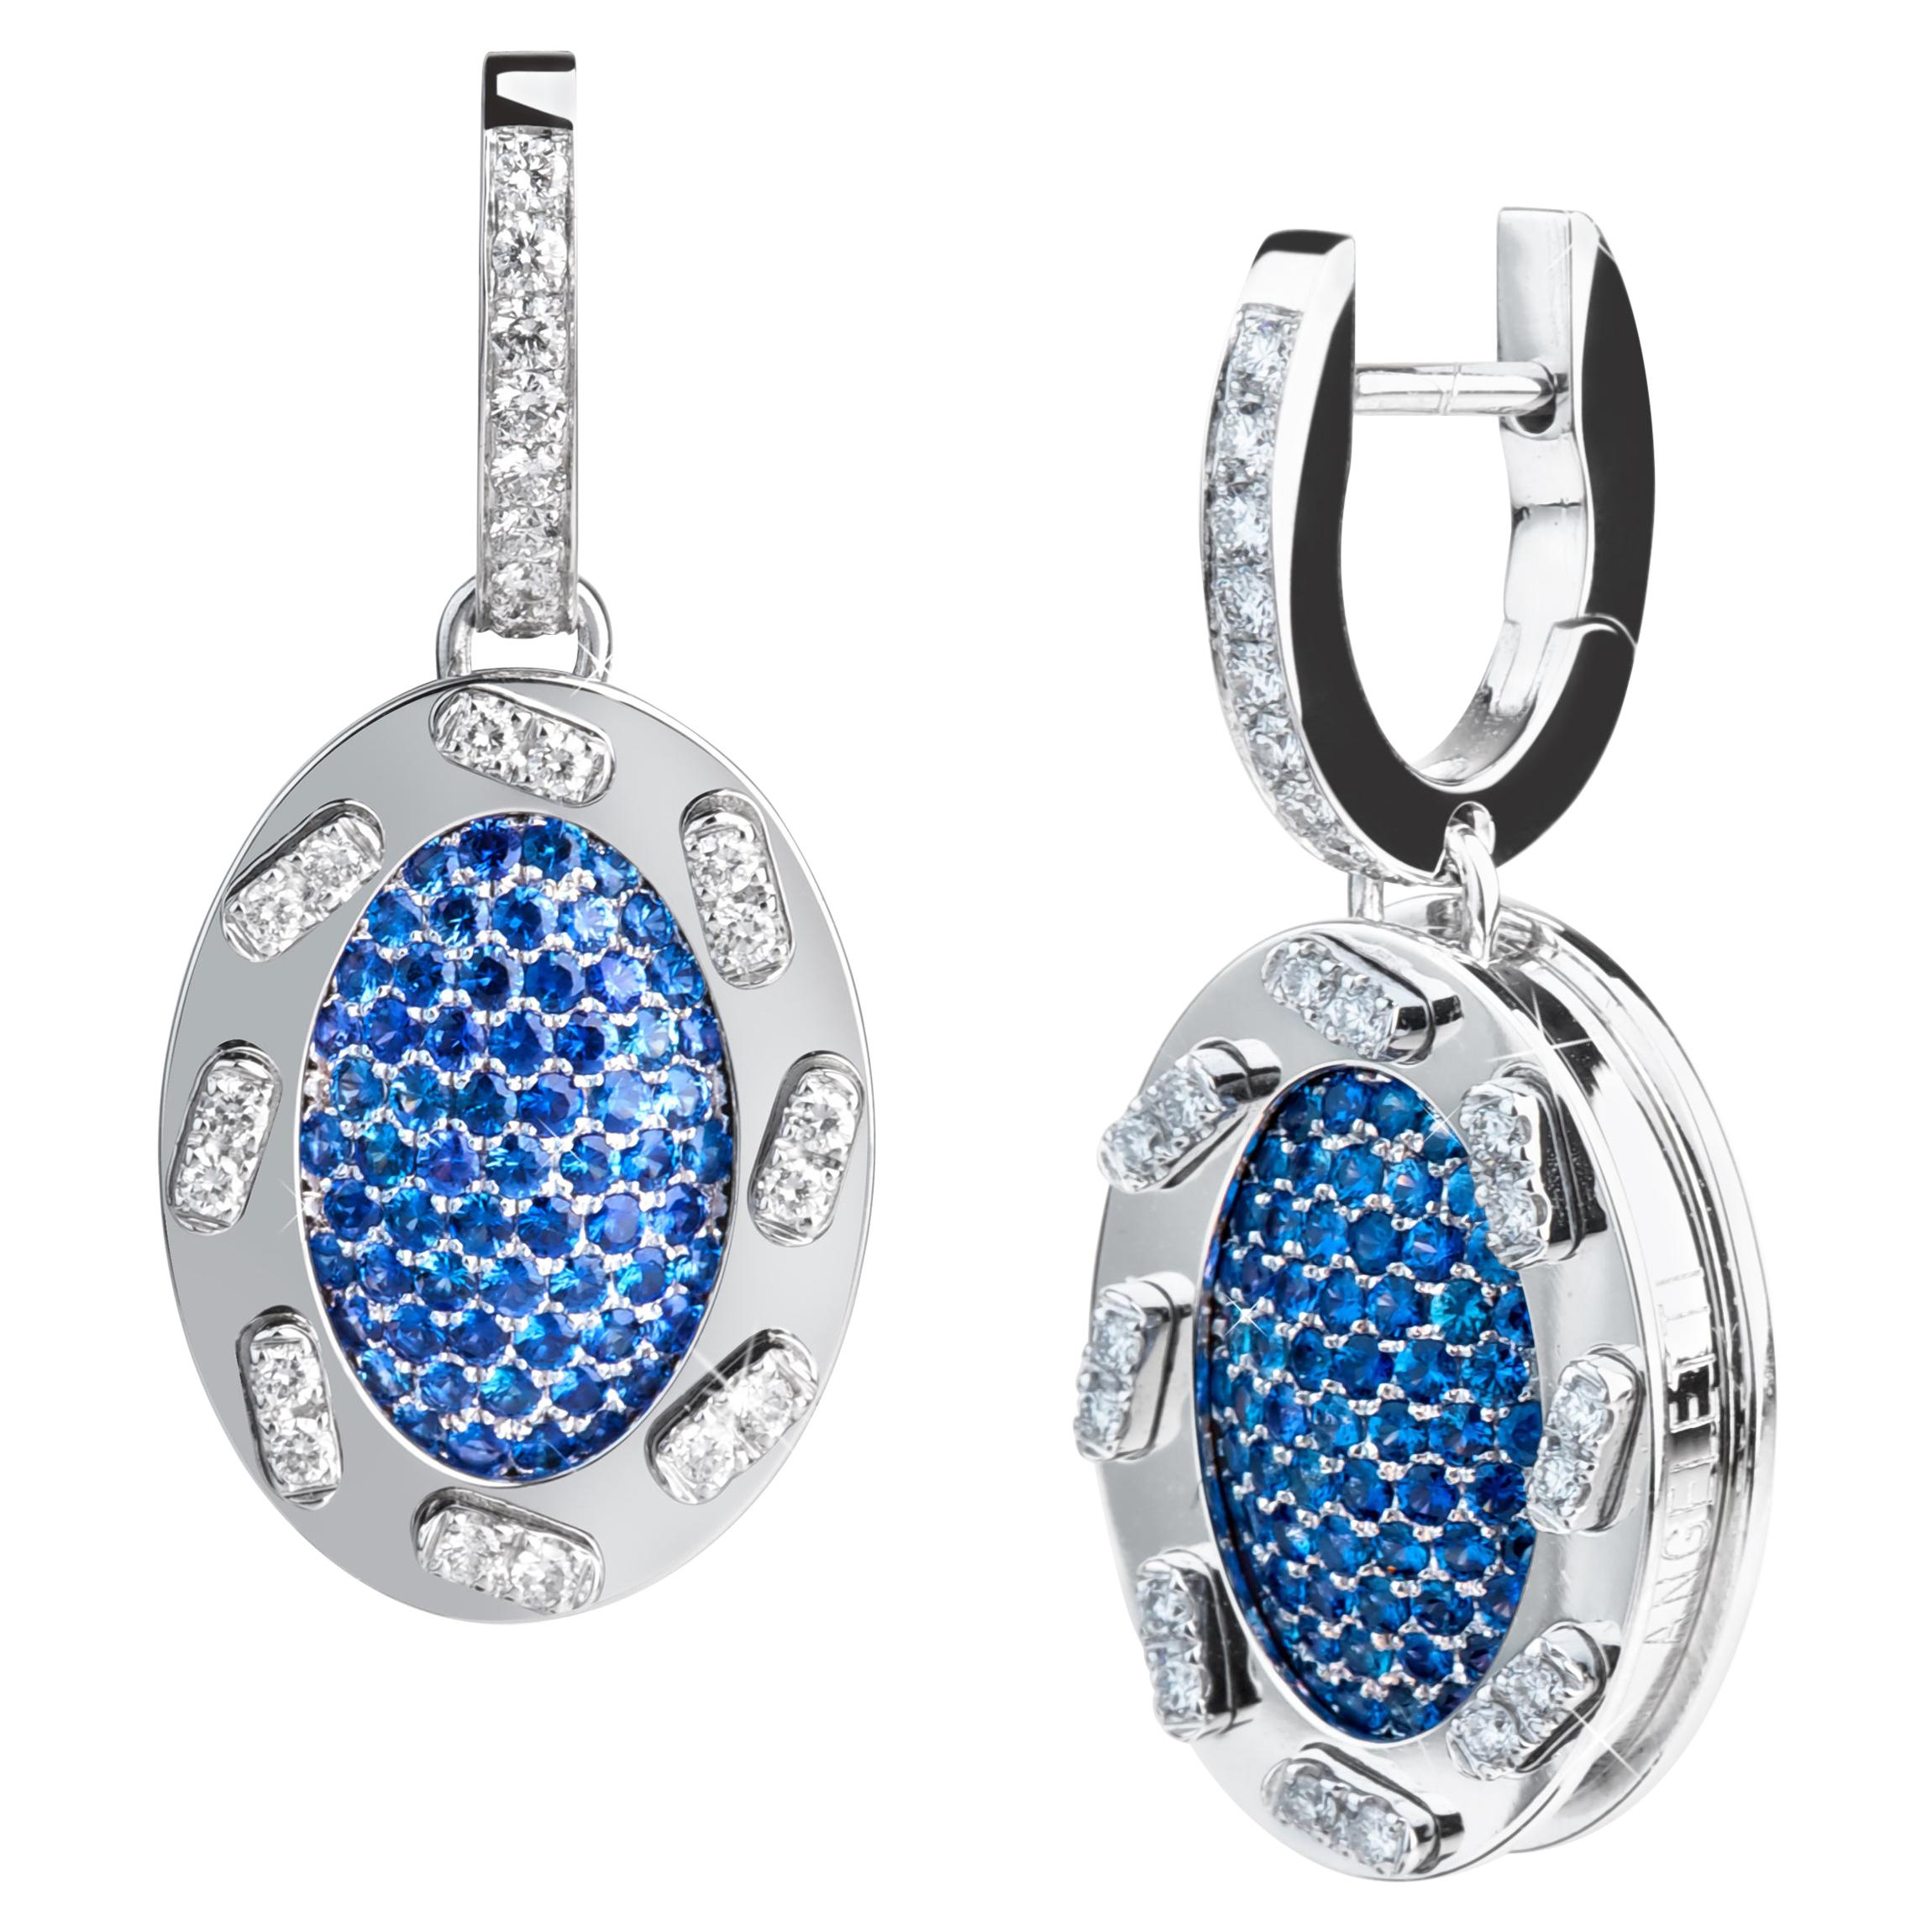 Boucles d'oreilles en or 18 carats avec saphirs bleus et diamants de la collection emblématique Omles